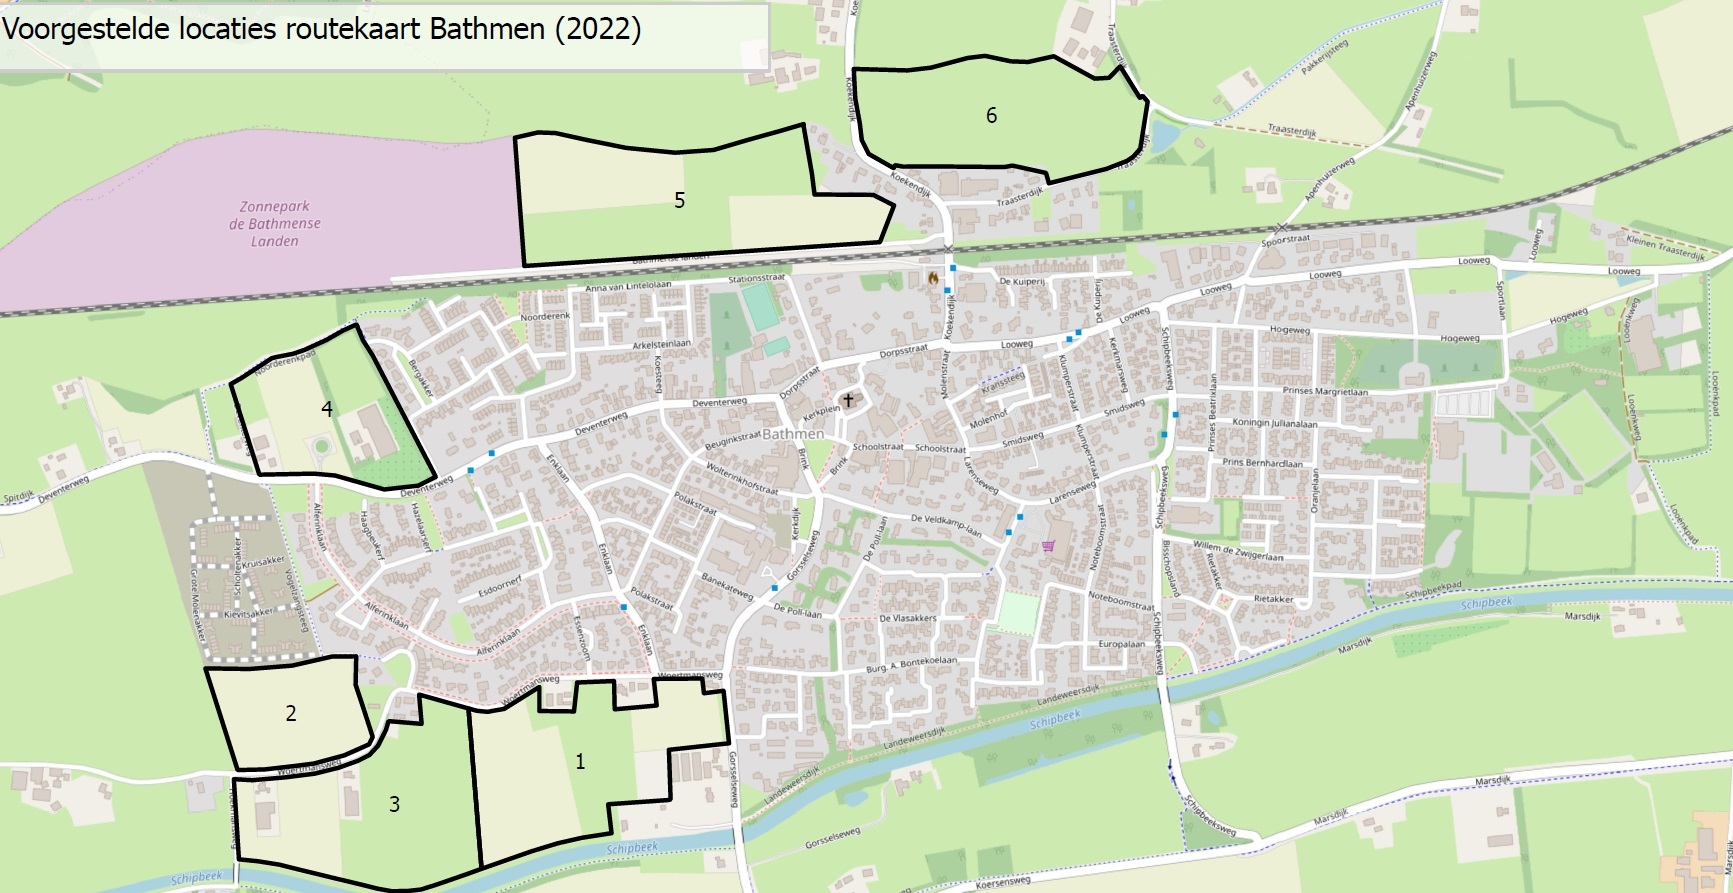 Kaart met voorgestelde locaties routekaart Bathmen